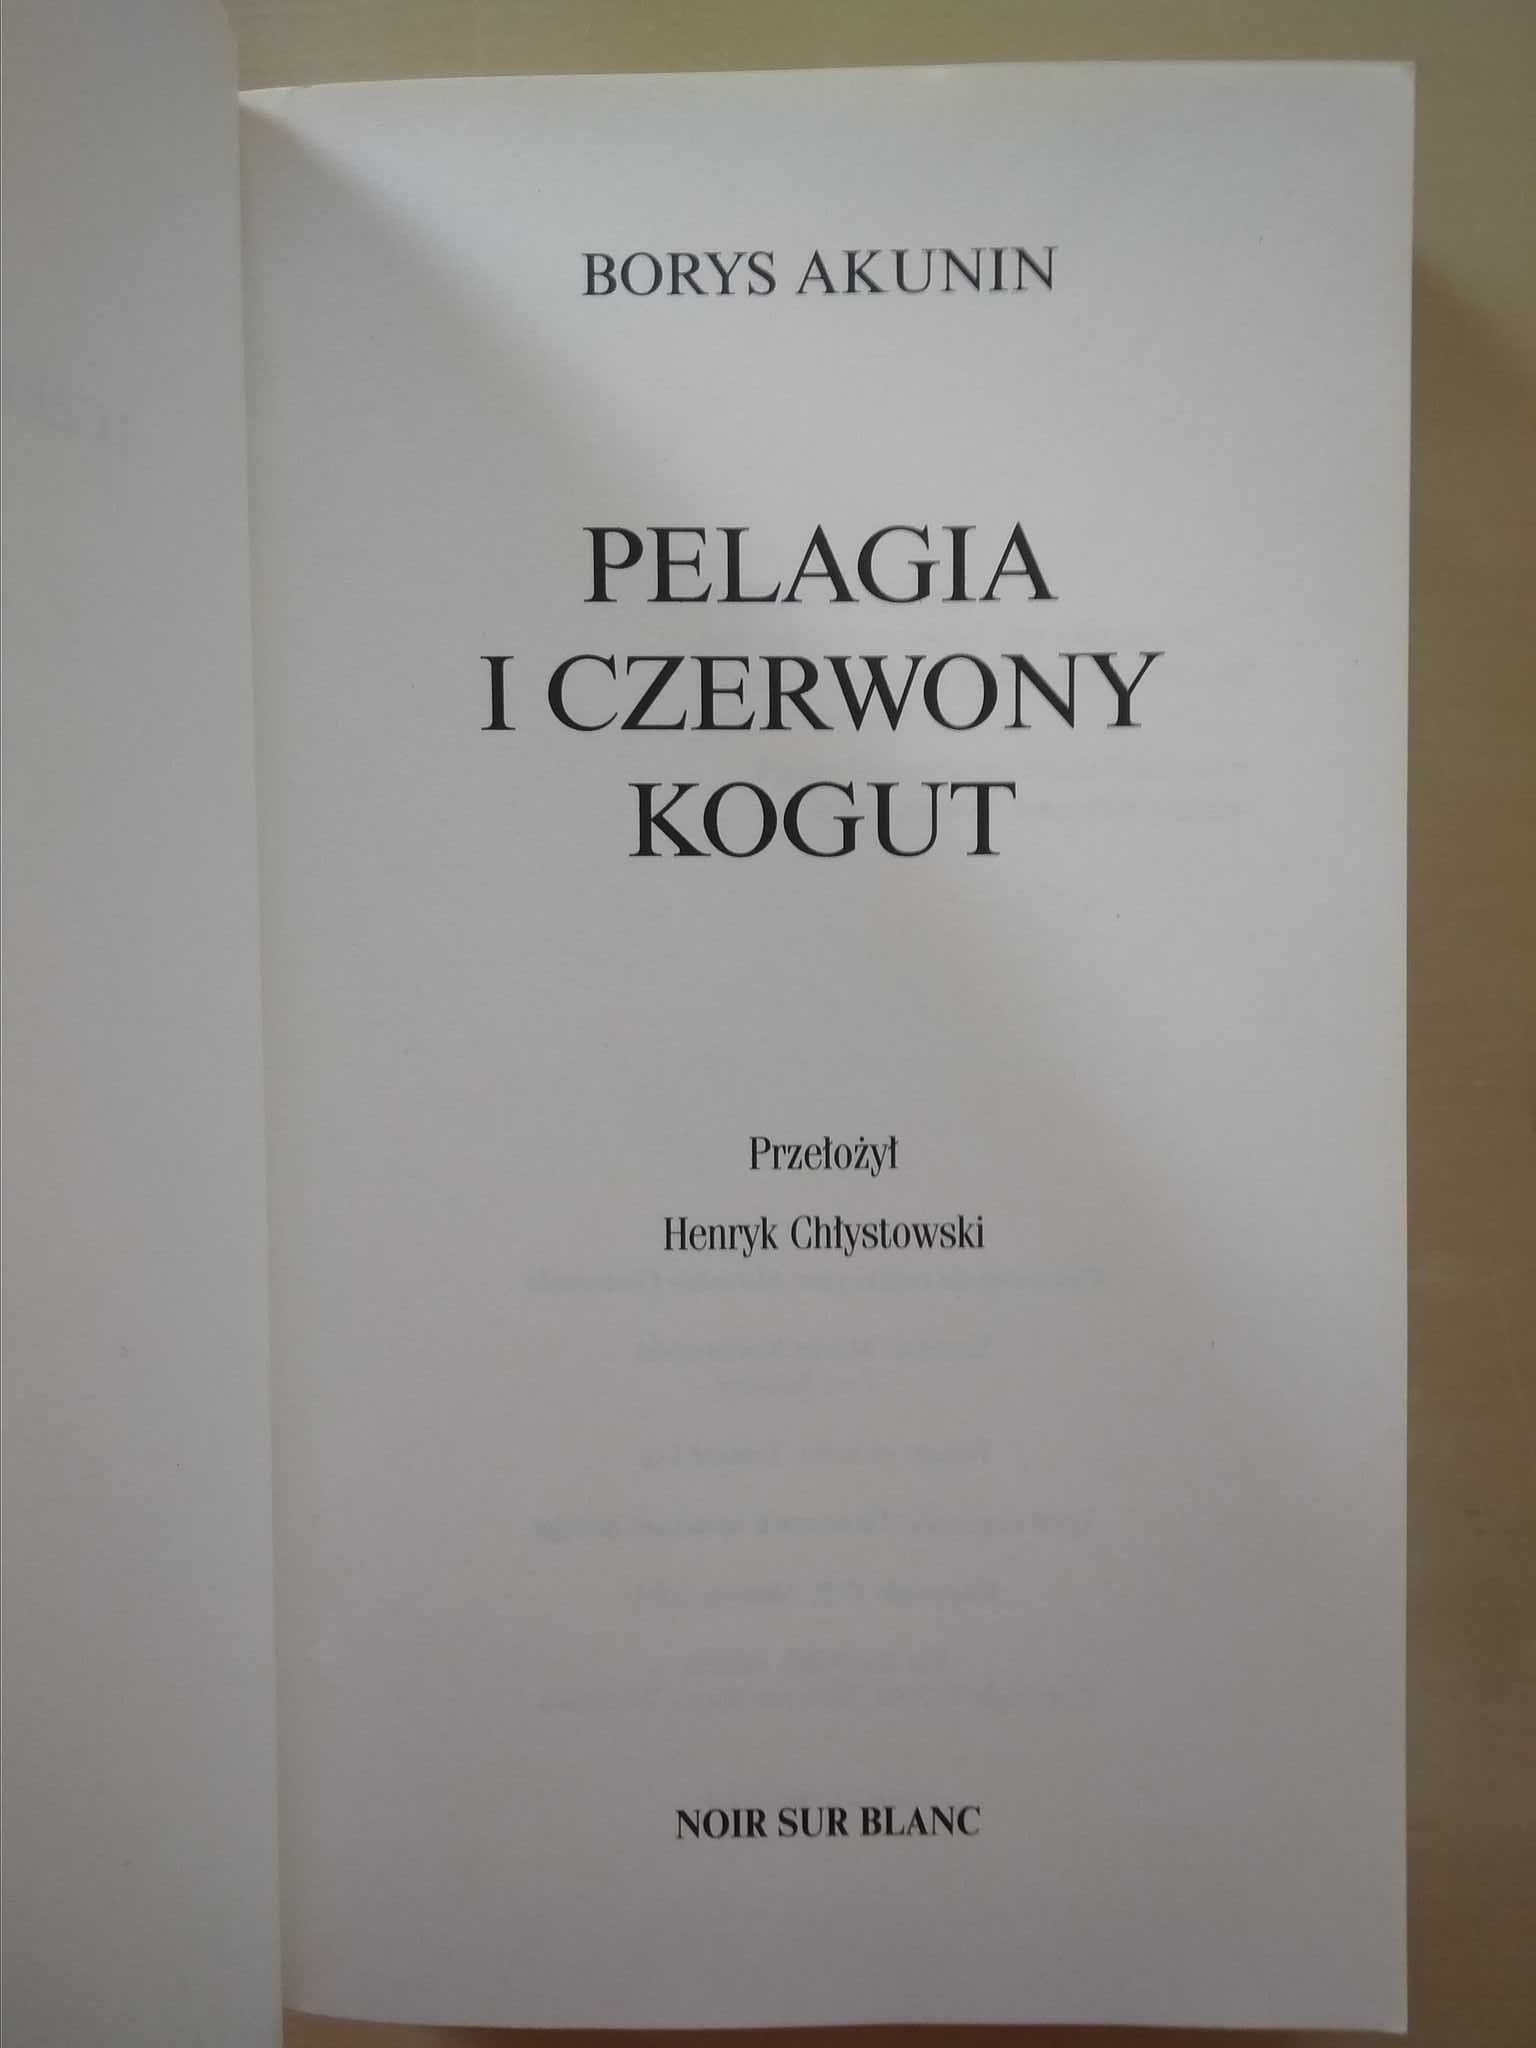 "Pelagia i czerwony kogut" Borys Akunin